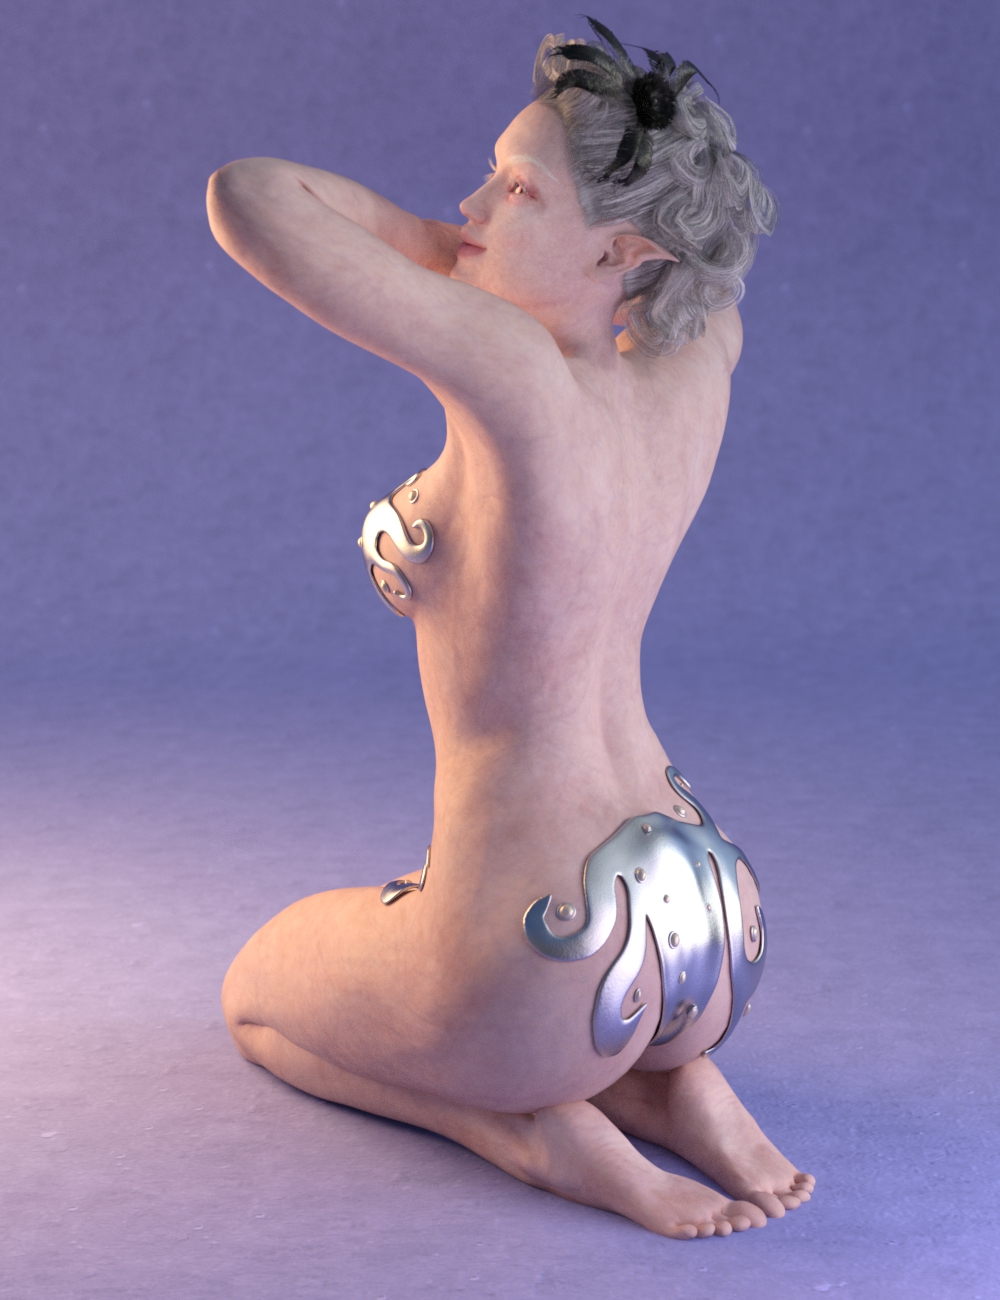 Beautiful Skin Iray Genesis 2 Female(s) by: SickleyieldFuseling, 3D Models by Daz 3D